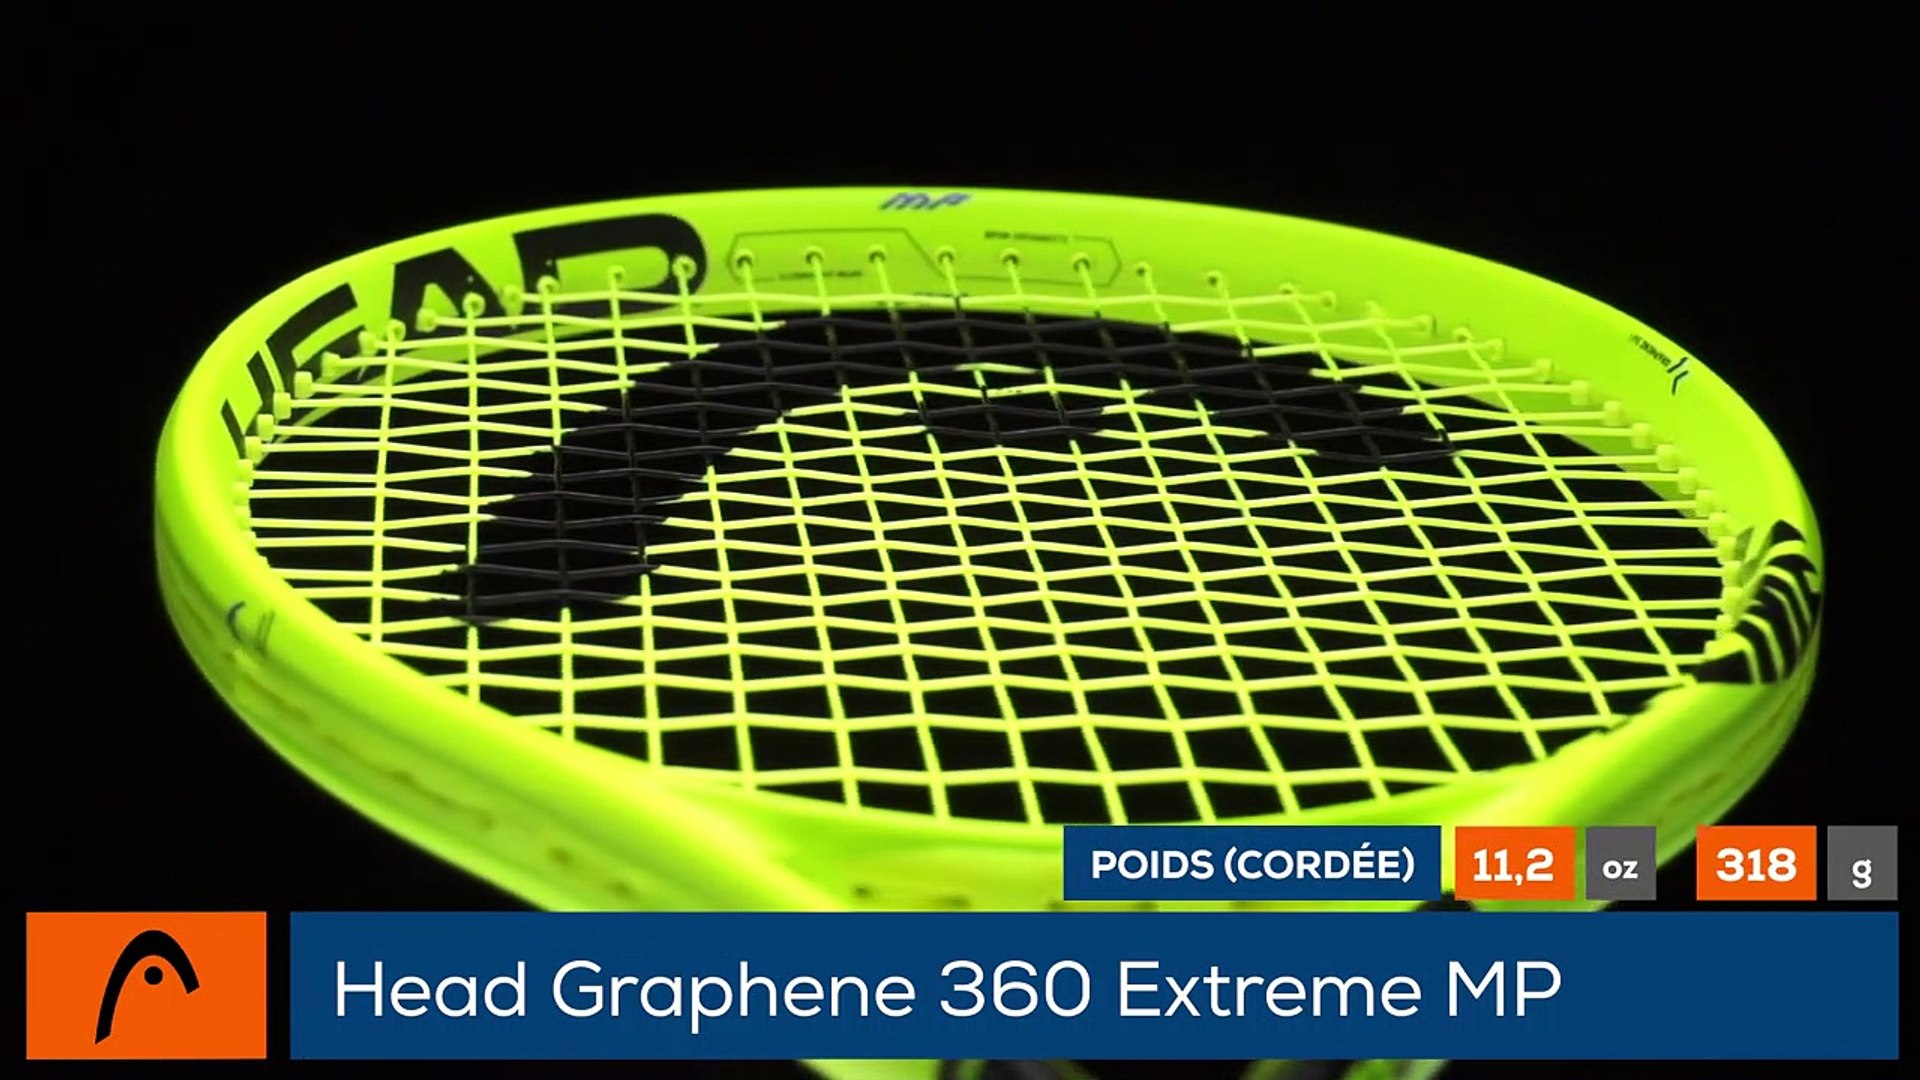 Tennis Test Matériel - On a testé pour vous la Head Graphene 360 Extreme MP  - Vidéo Dailymotion